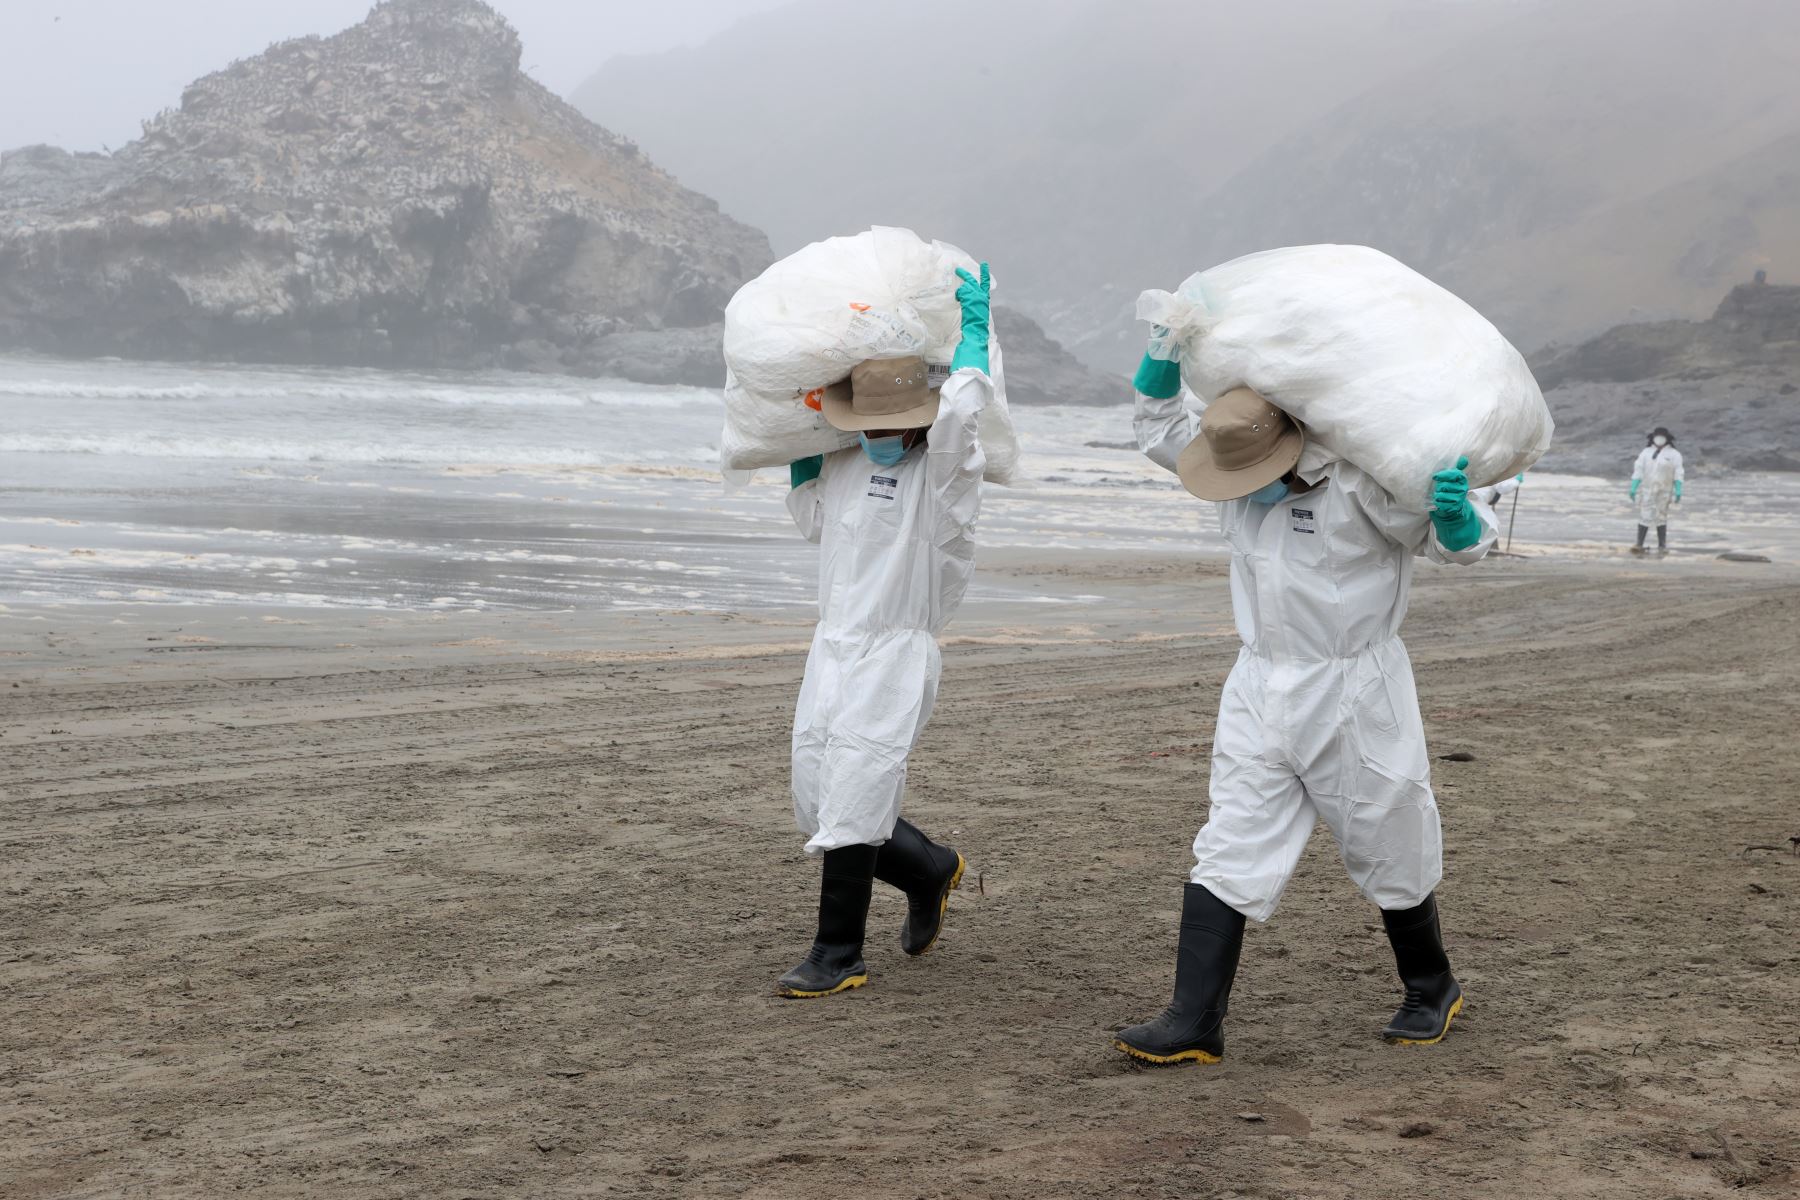 Continúan los trabajos de limpieza en la playa Cavero ubicada en Ventanilla. Este lugar es uno de los más afectados por el derrame de petróleo ocasionado por la empresa Repsol y que causó un gran impacto ambiental. Foto: ANDINA/Vidal Tarqui